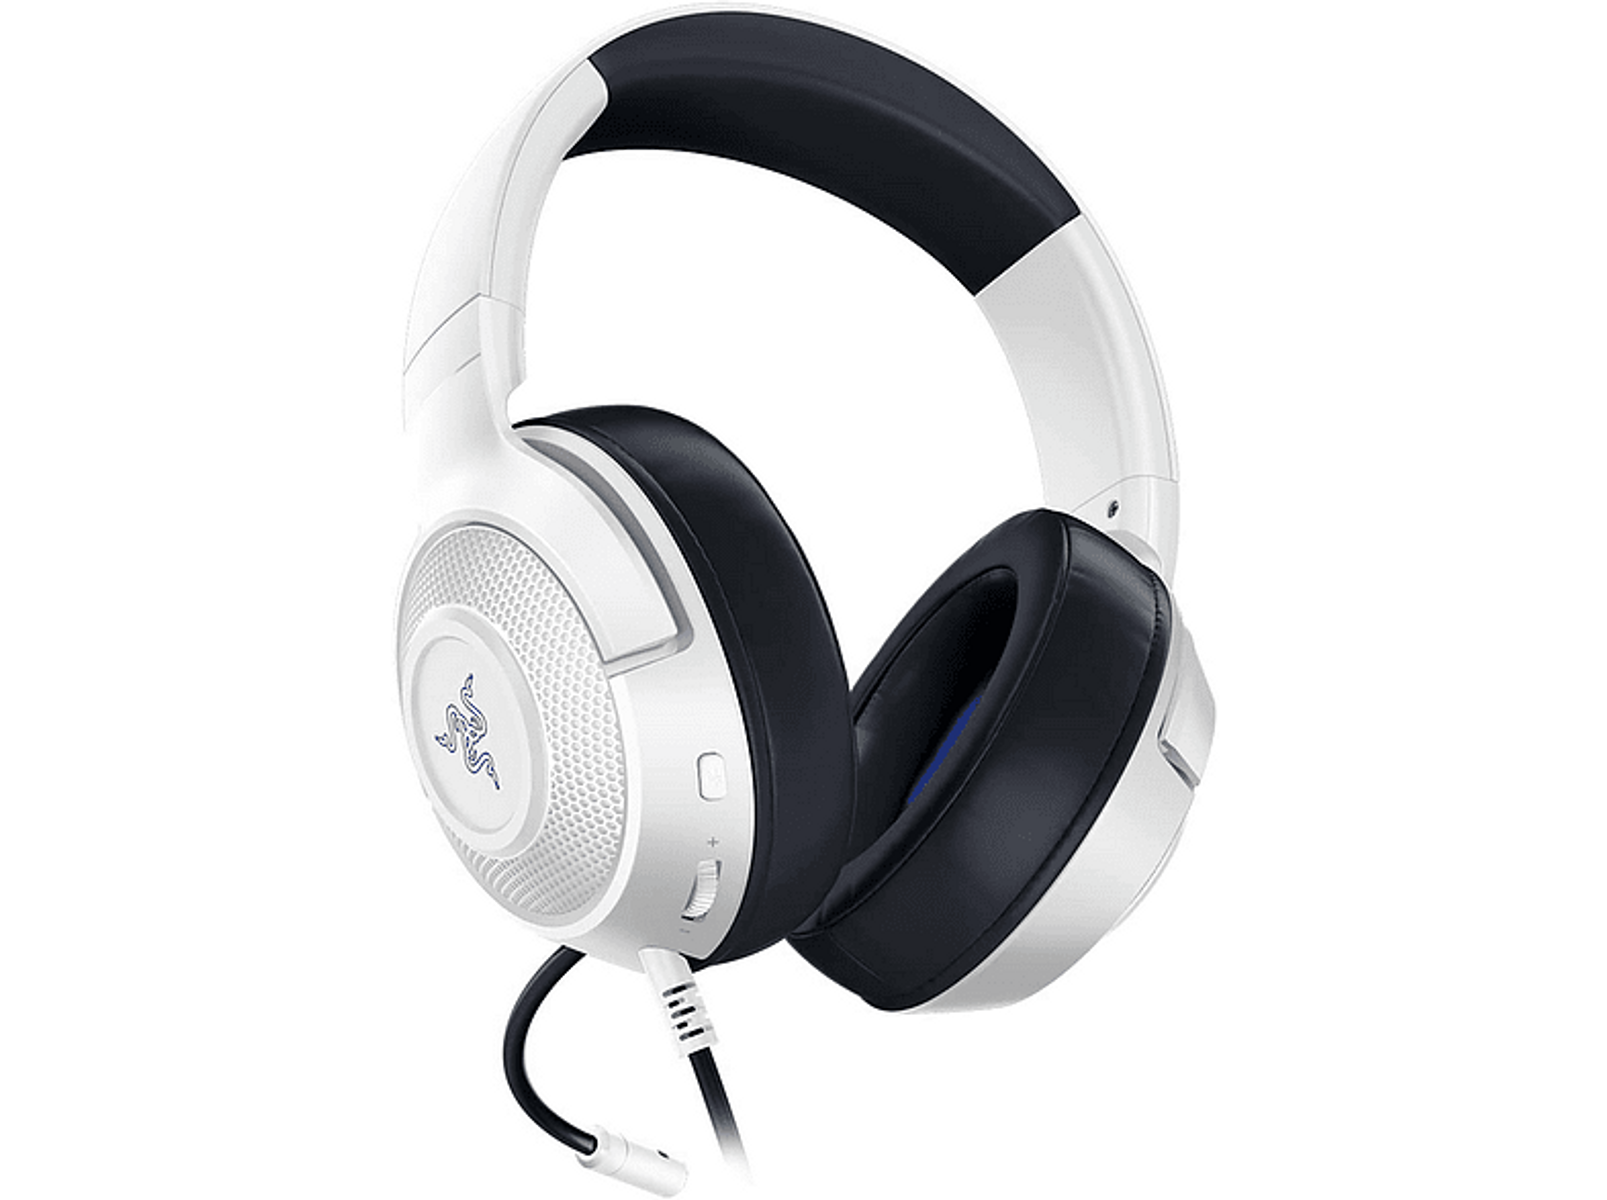 KRAKEN RAZER CONSOLE FOR Over-ear Headset Gaming Weiß/Blau X RZ04-02890500-R3M1 WHITE,